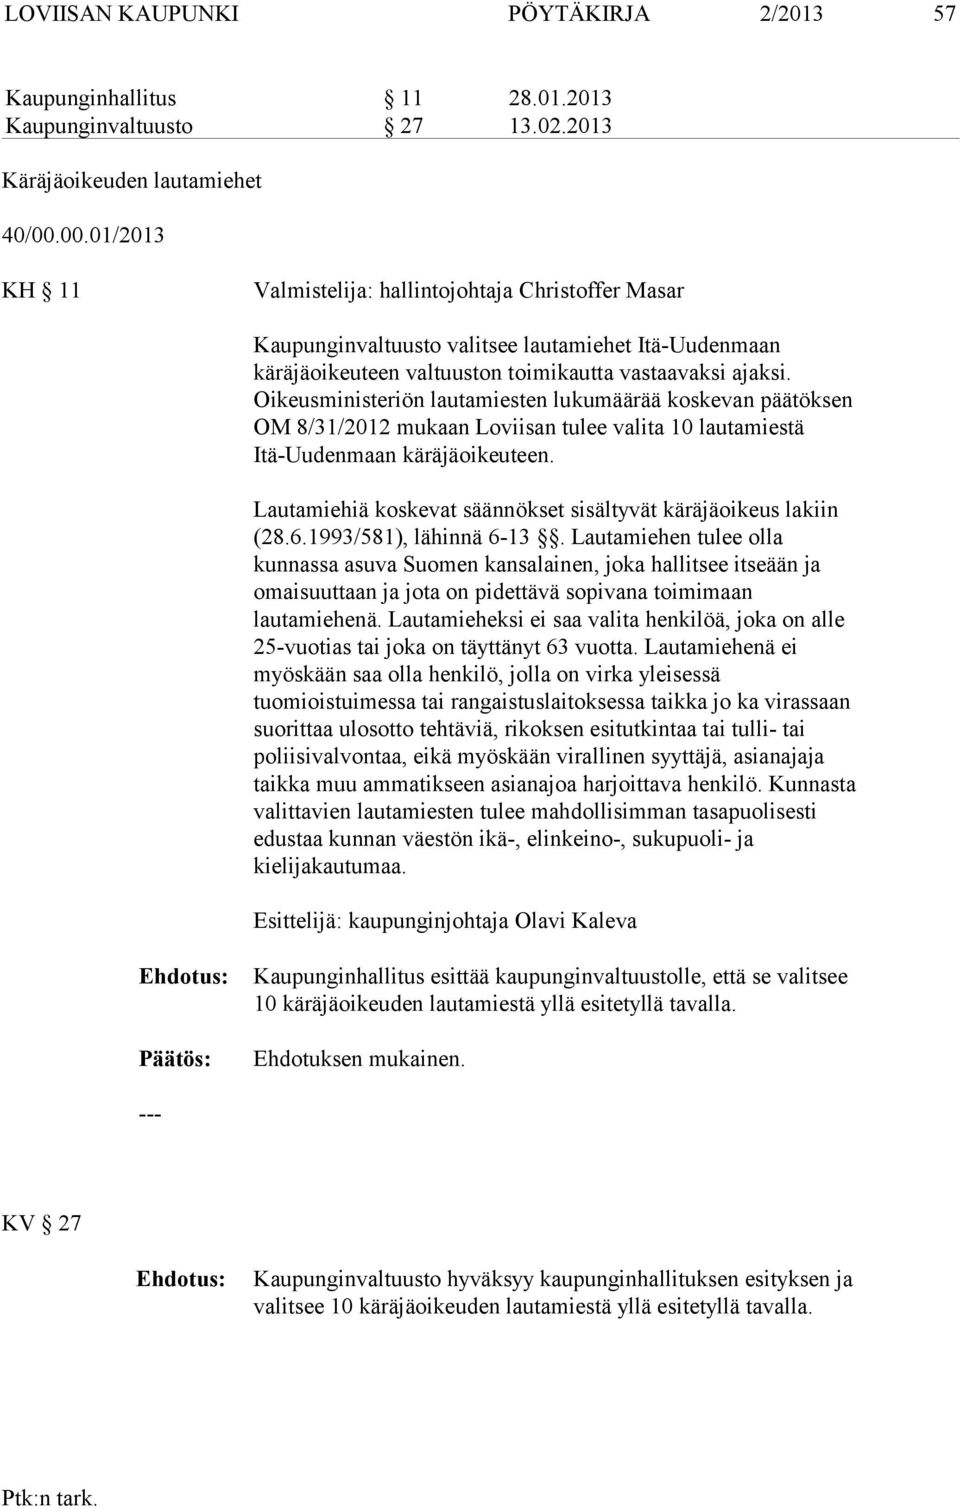 Oikeusministeriön lautamiesten lukumäärää koskevan päätöksen OM 8/31/2012 mukaan Loviisan tulee valita 10 lautamiestä Itä-Uudenmaan käräjäoikeuteen.